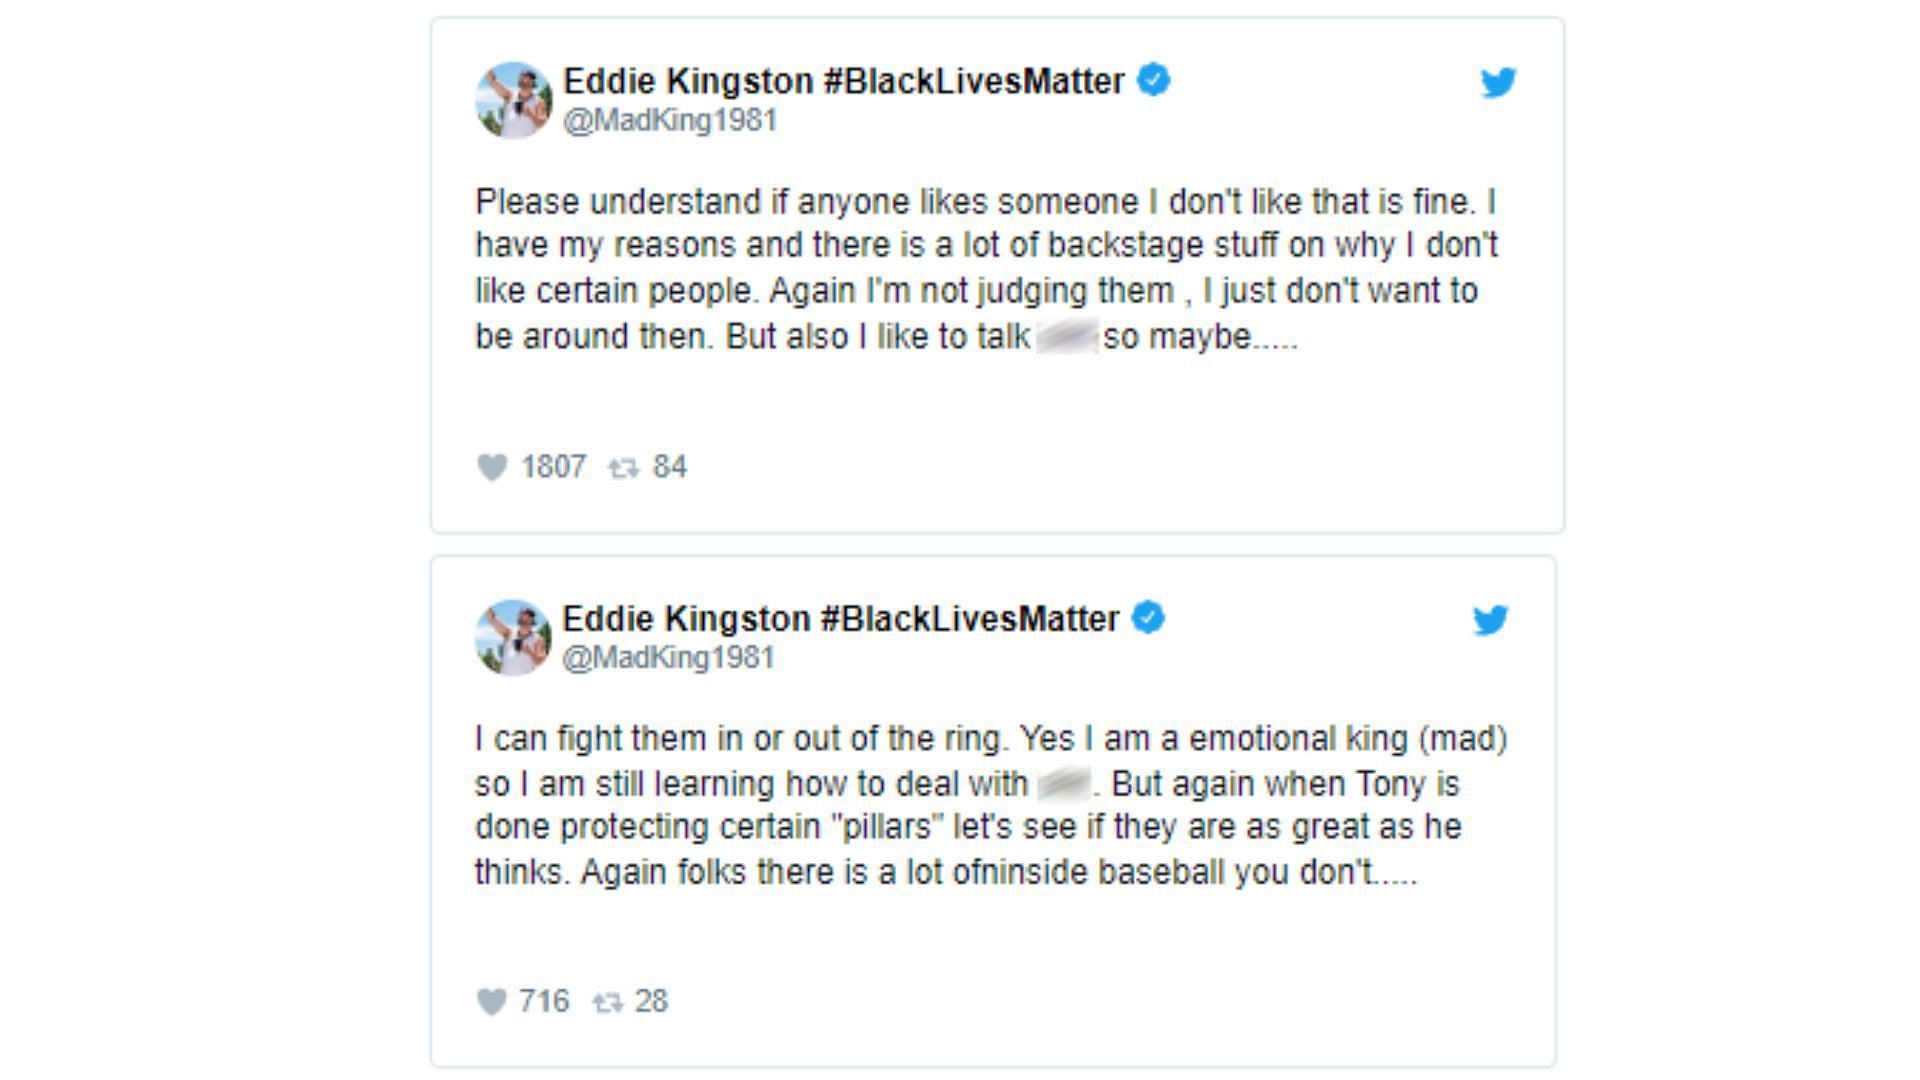 Is Eddie Kingston hinting at something more in his tweets?